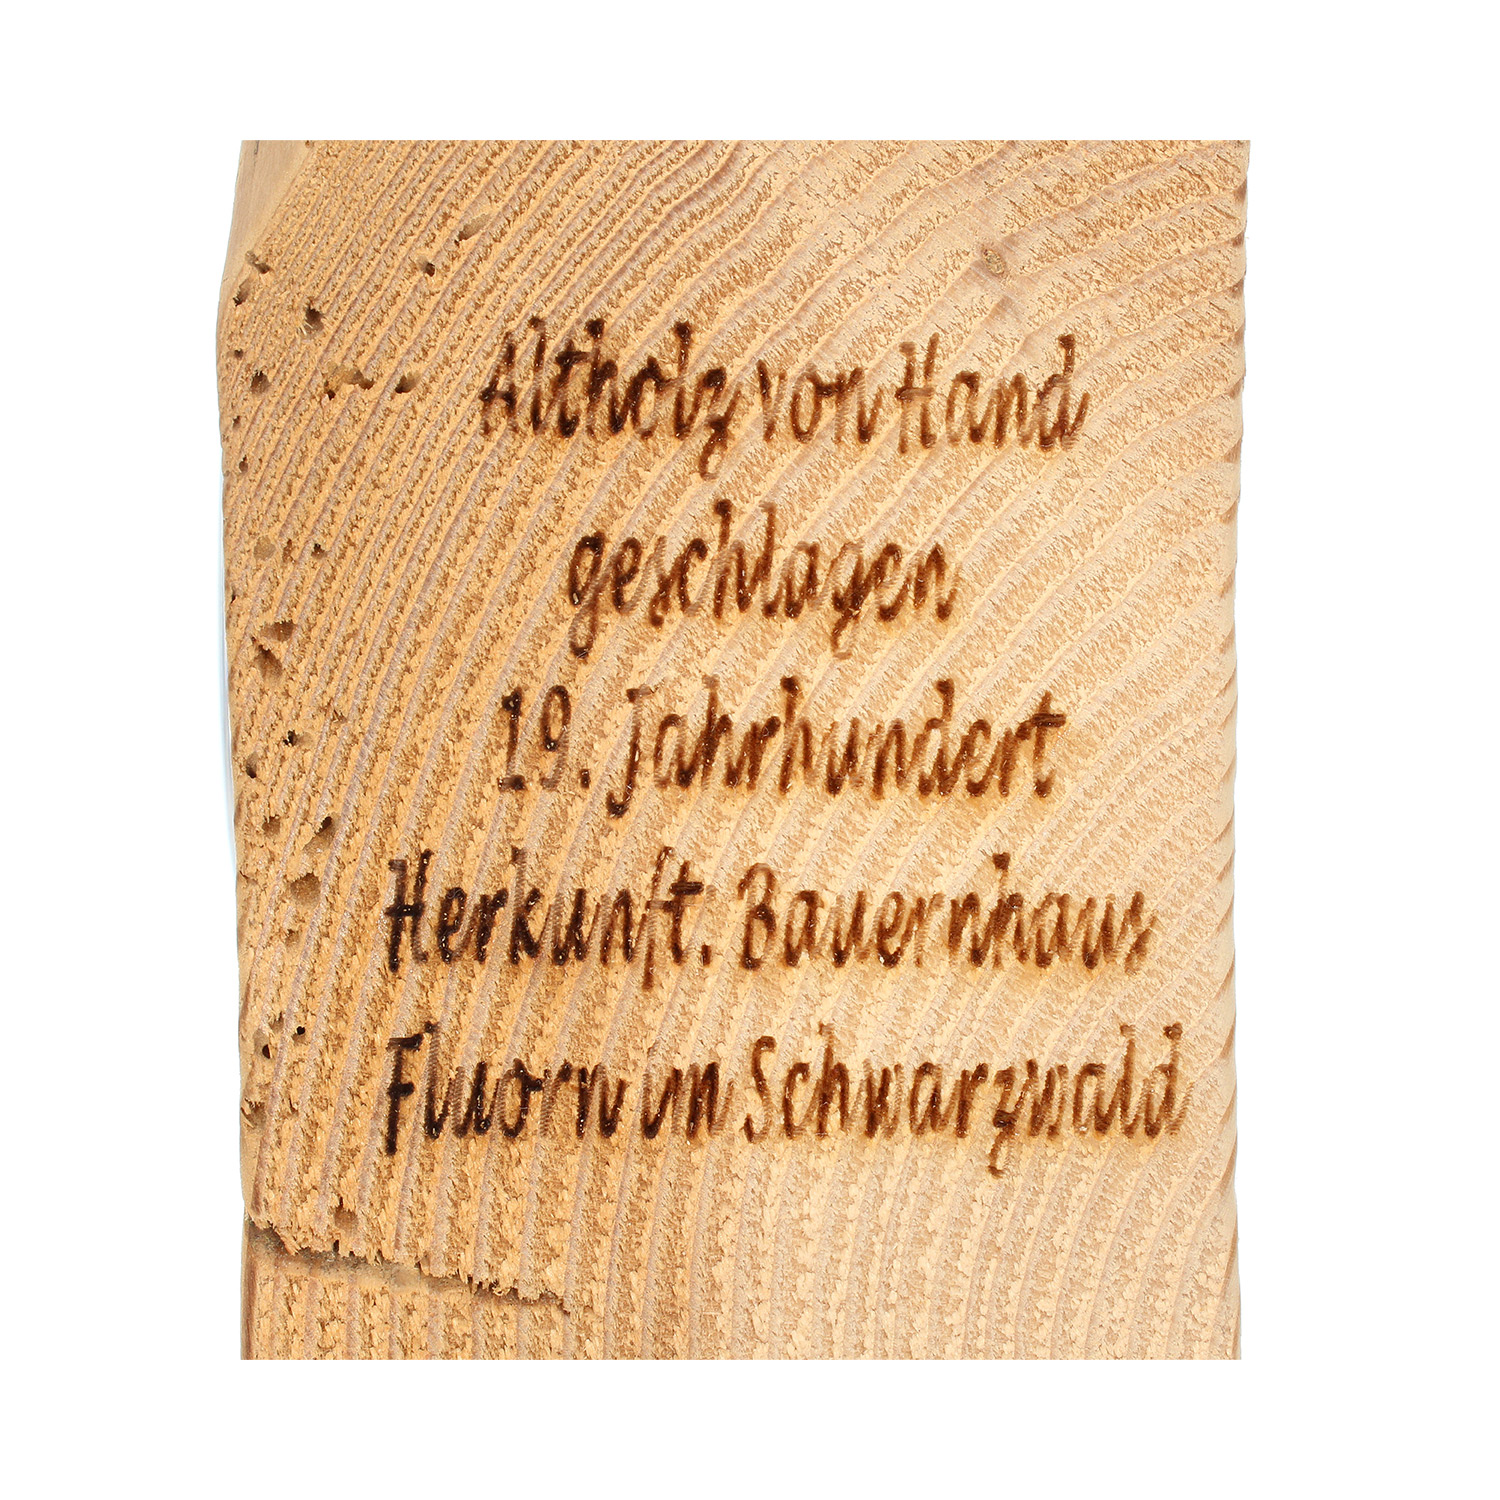 Altholz-Uhr Schwarzwaldhäusle, Zifferblatt schwarz